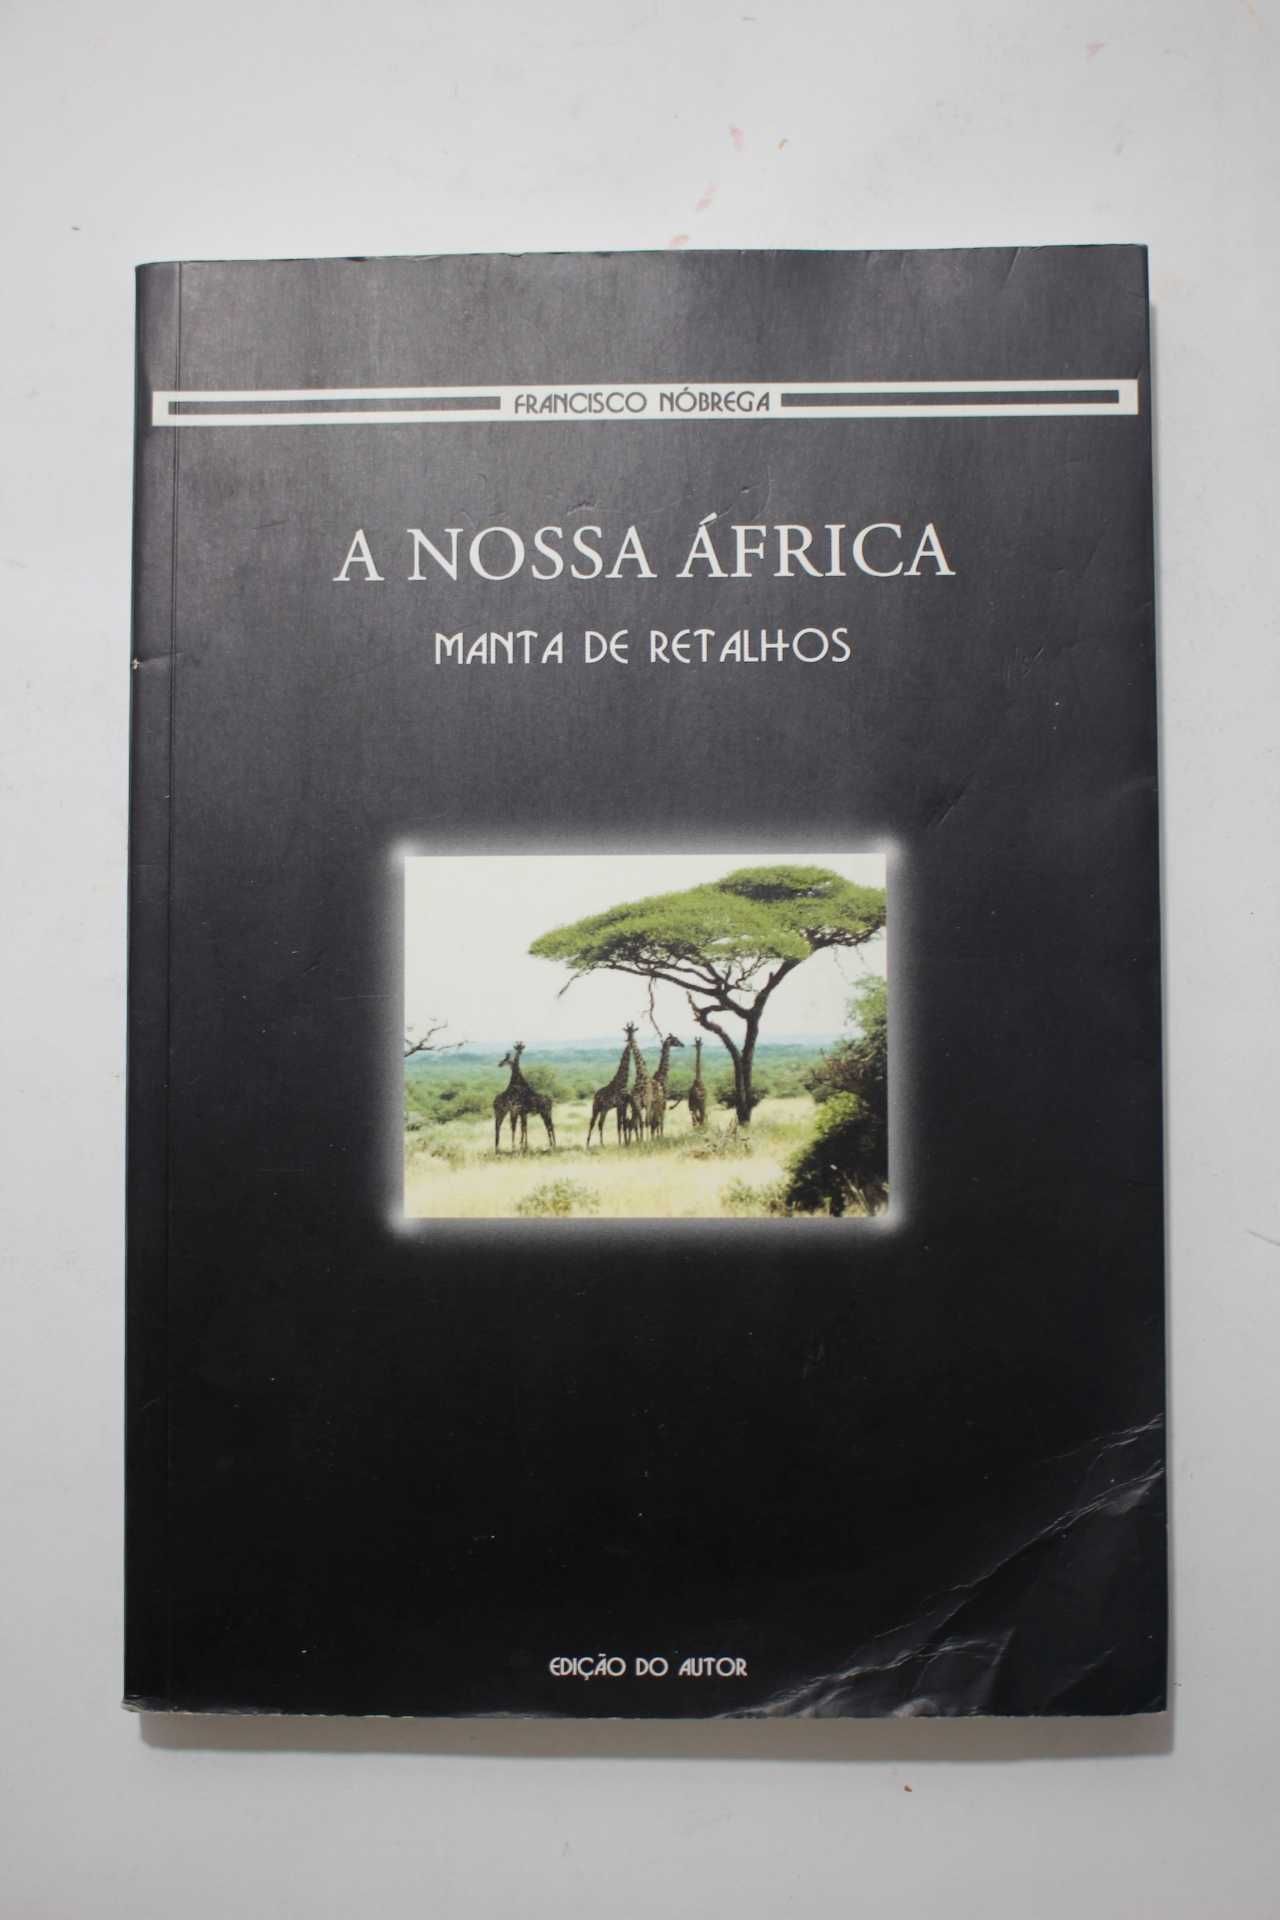 Livro - A nossa África - Manta de retalhos - Francisco Nóbrega